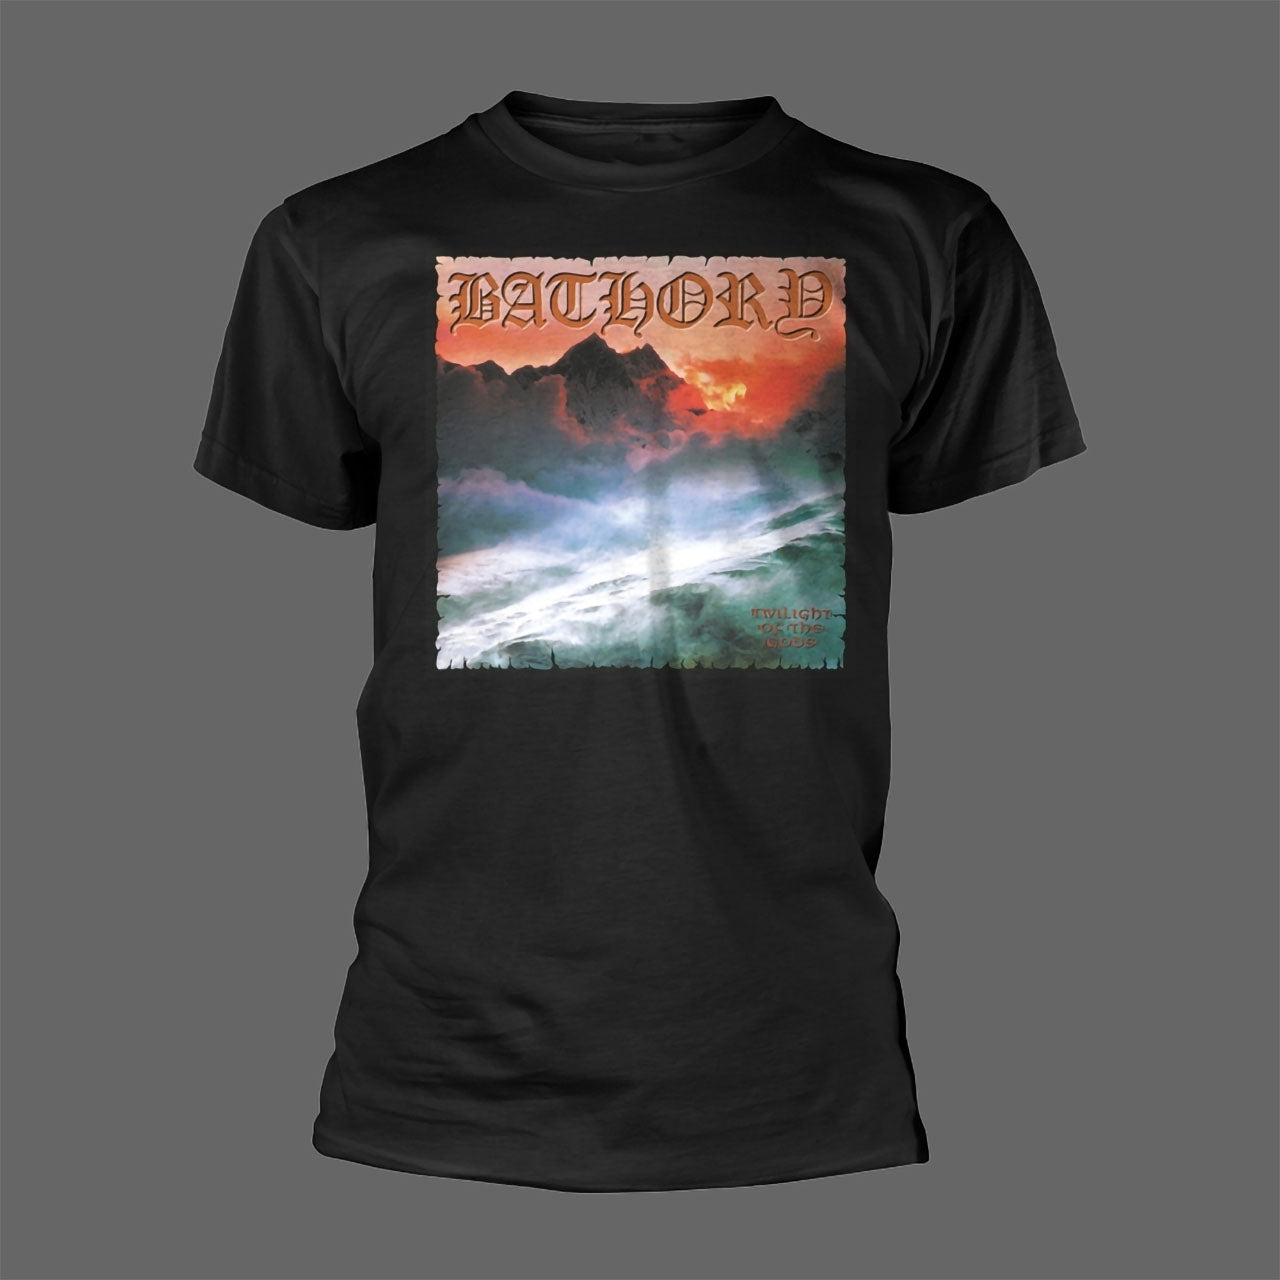 Bathory - Twilight of the Gods (T-Shirt)